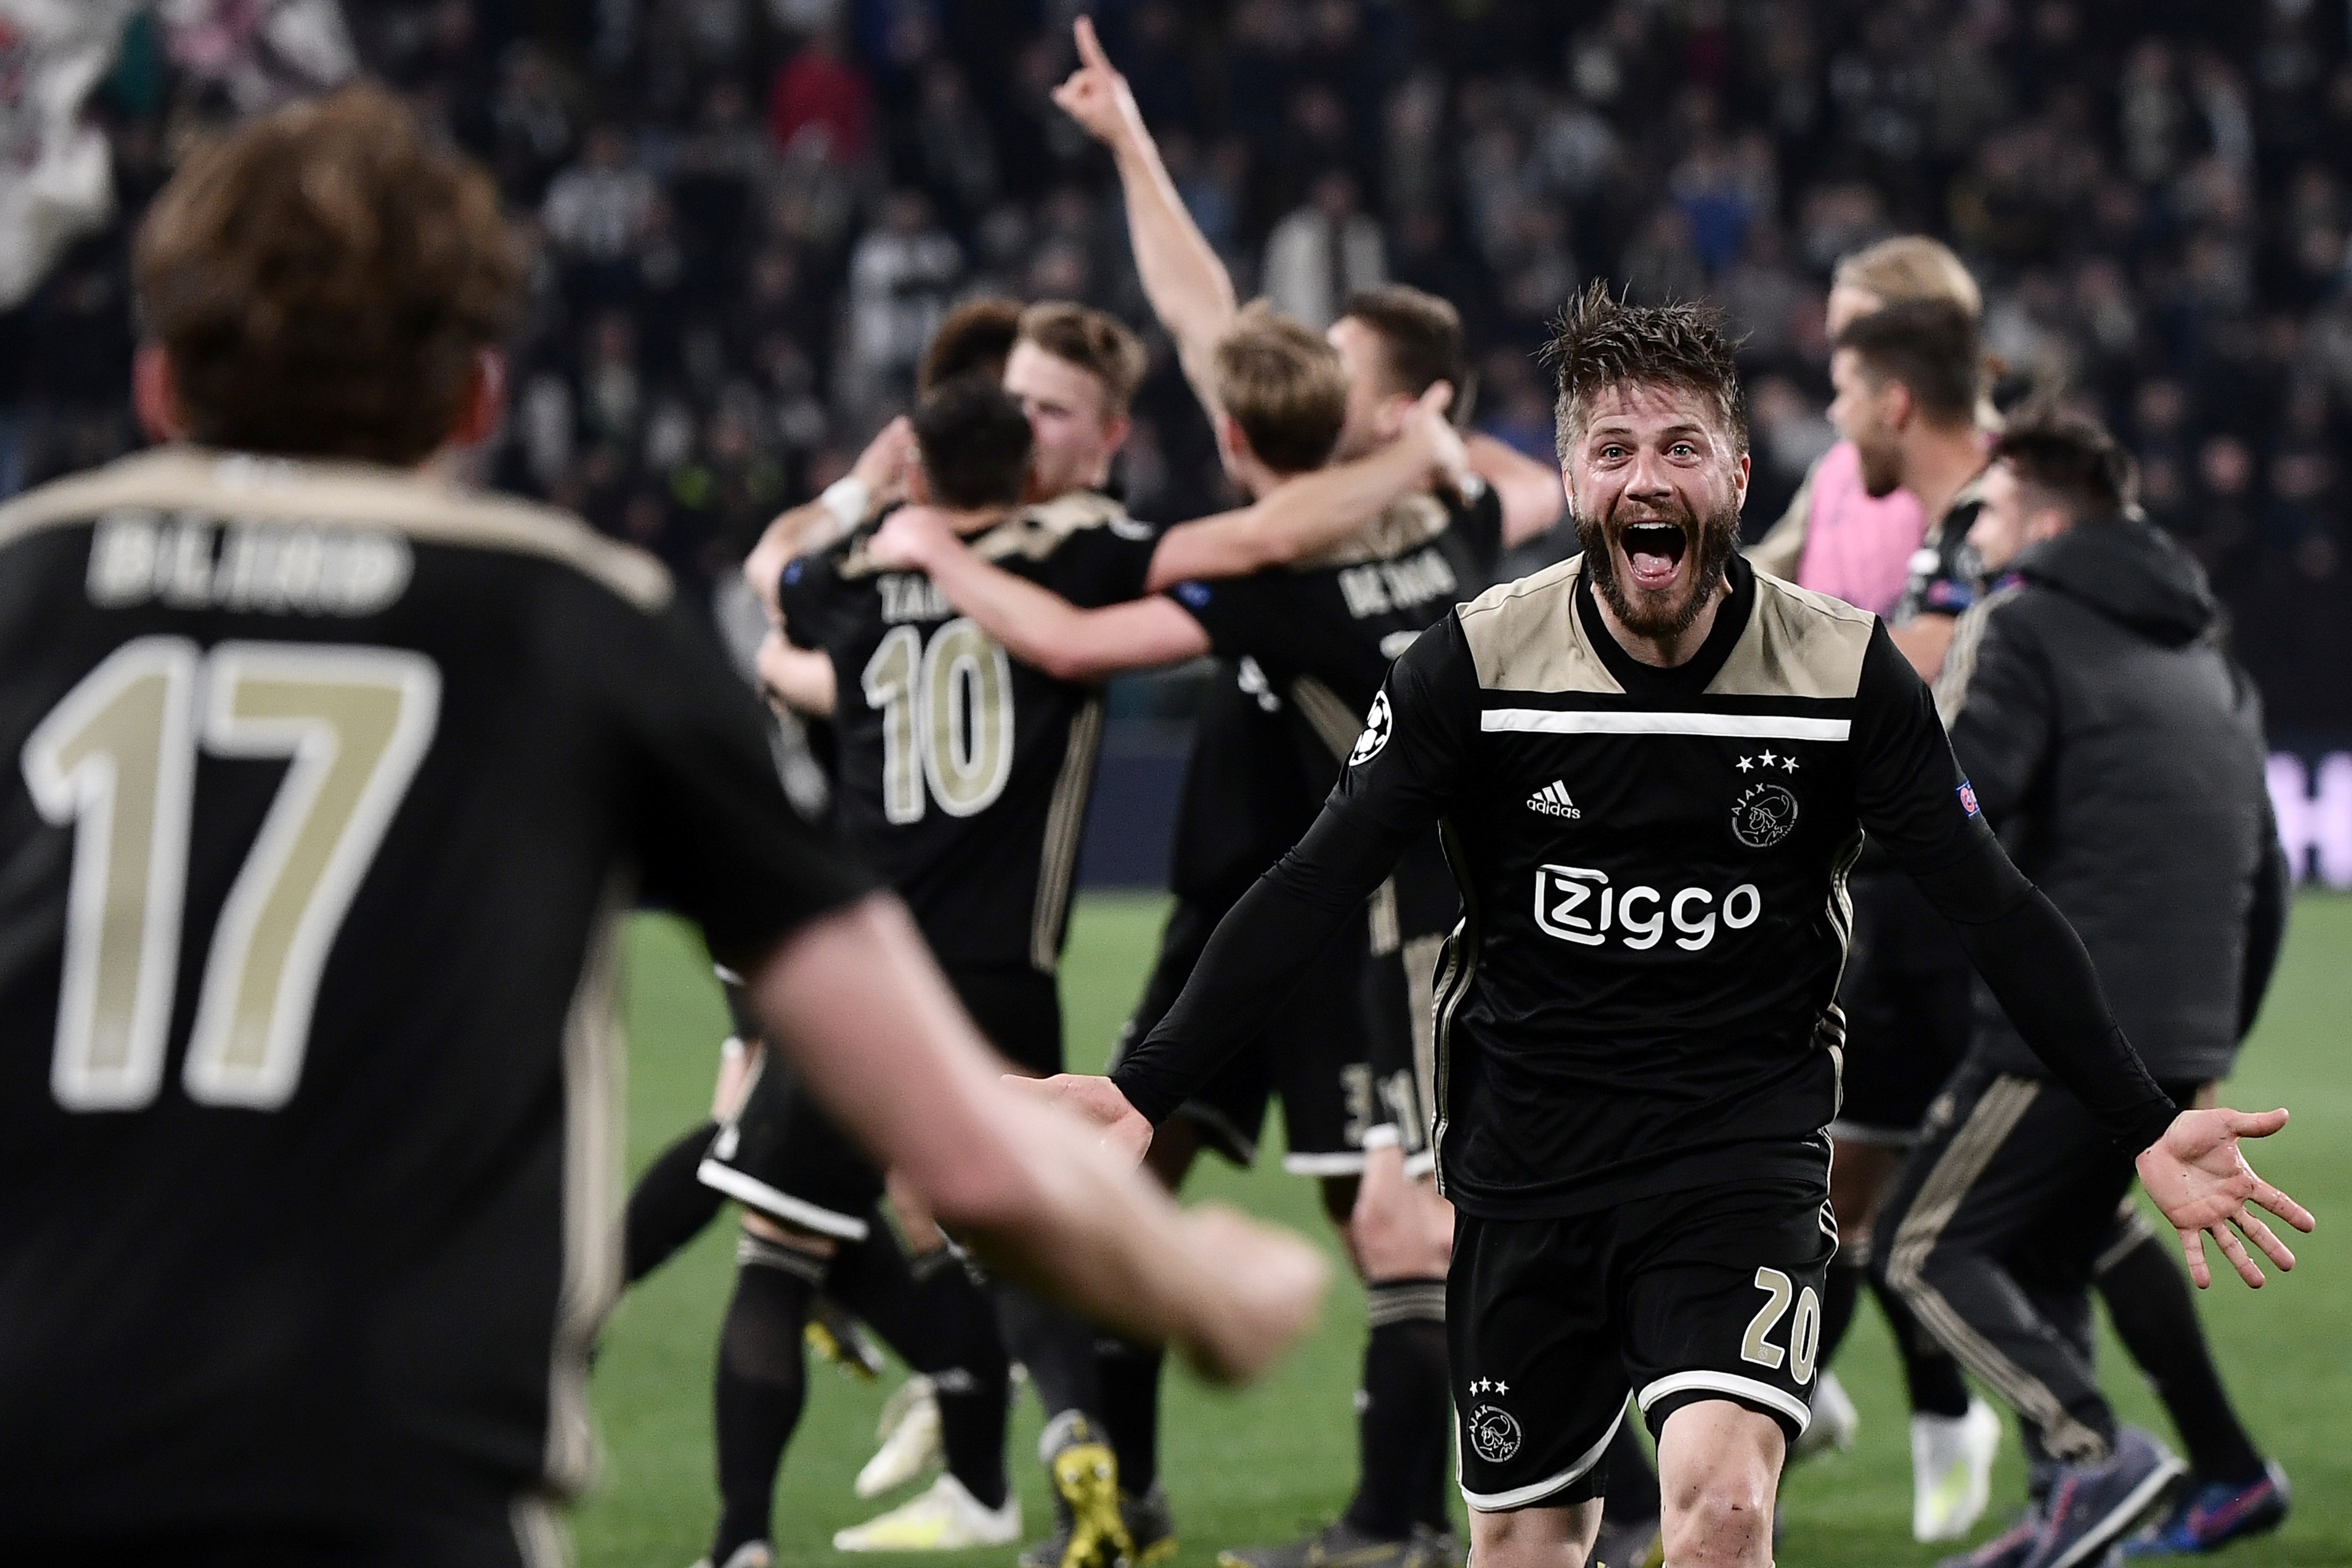 El regreso del Ajax. Después de tumbar al Real Madrid y a la… | by Matías |  Medium